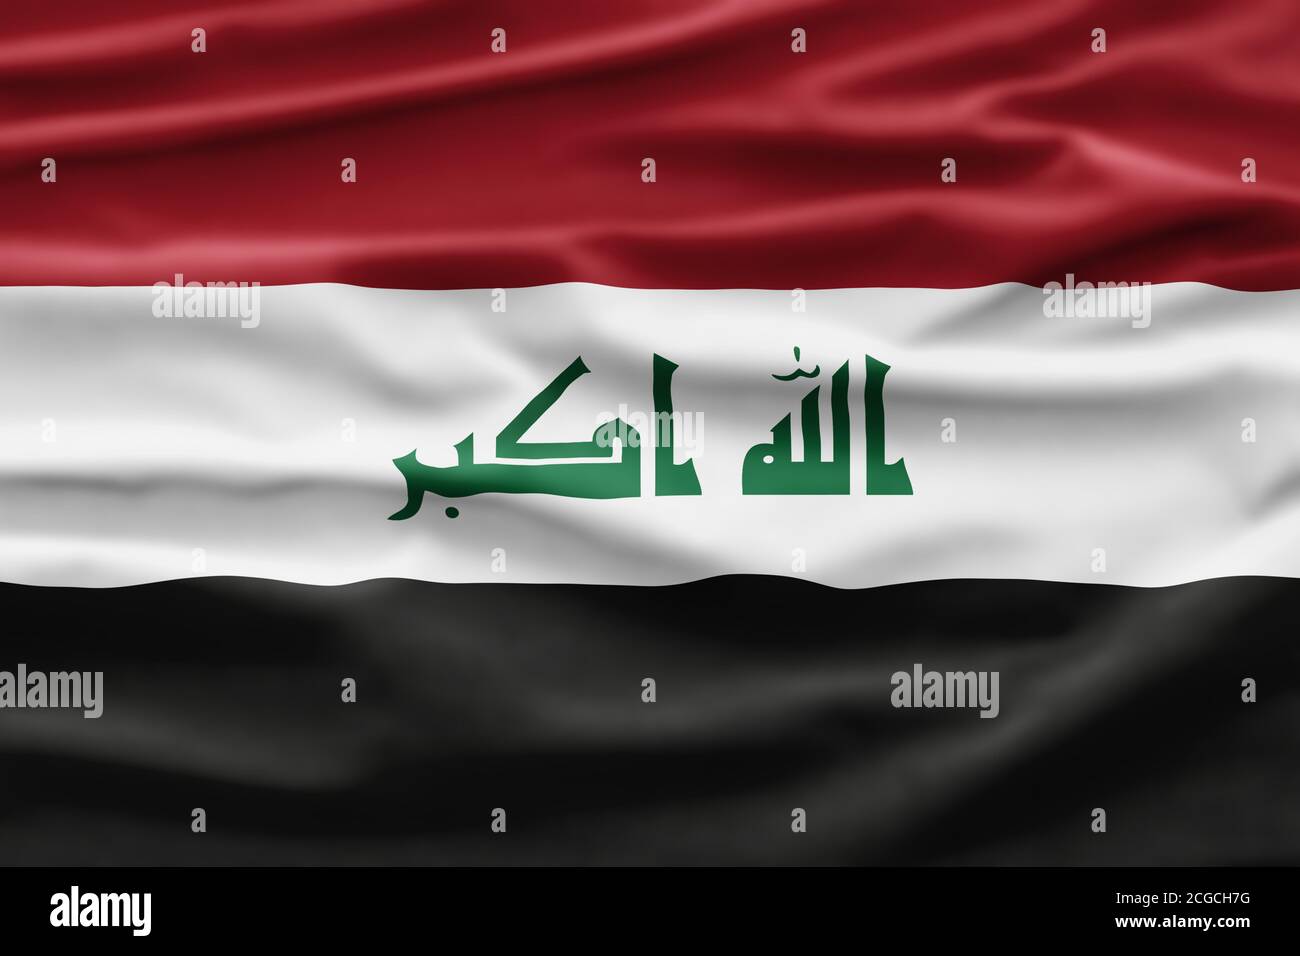 https://c8.alamy.com/compde/2cgch7g/nationalfeiertag-irak-irakische-flagge-hintergrund-mit-grunen-symbolen-und-nationalen-farben-2cgch7g.jpg